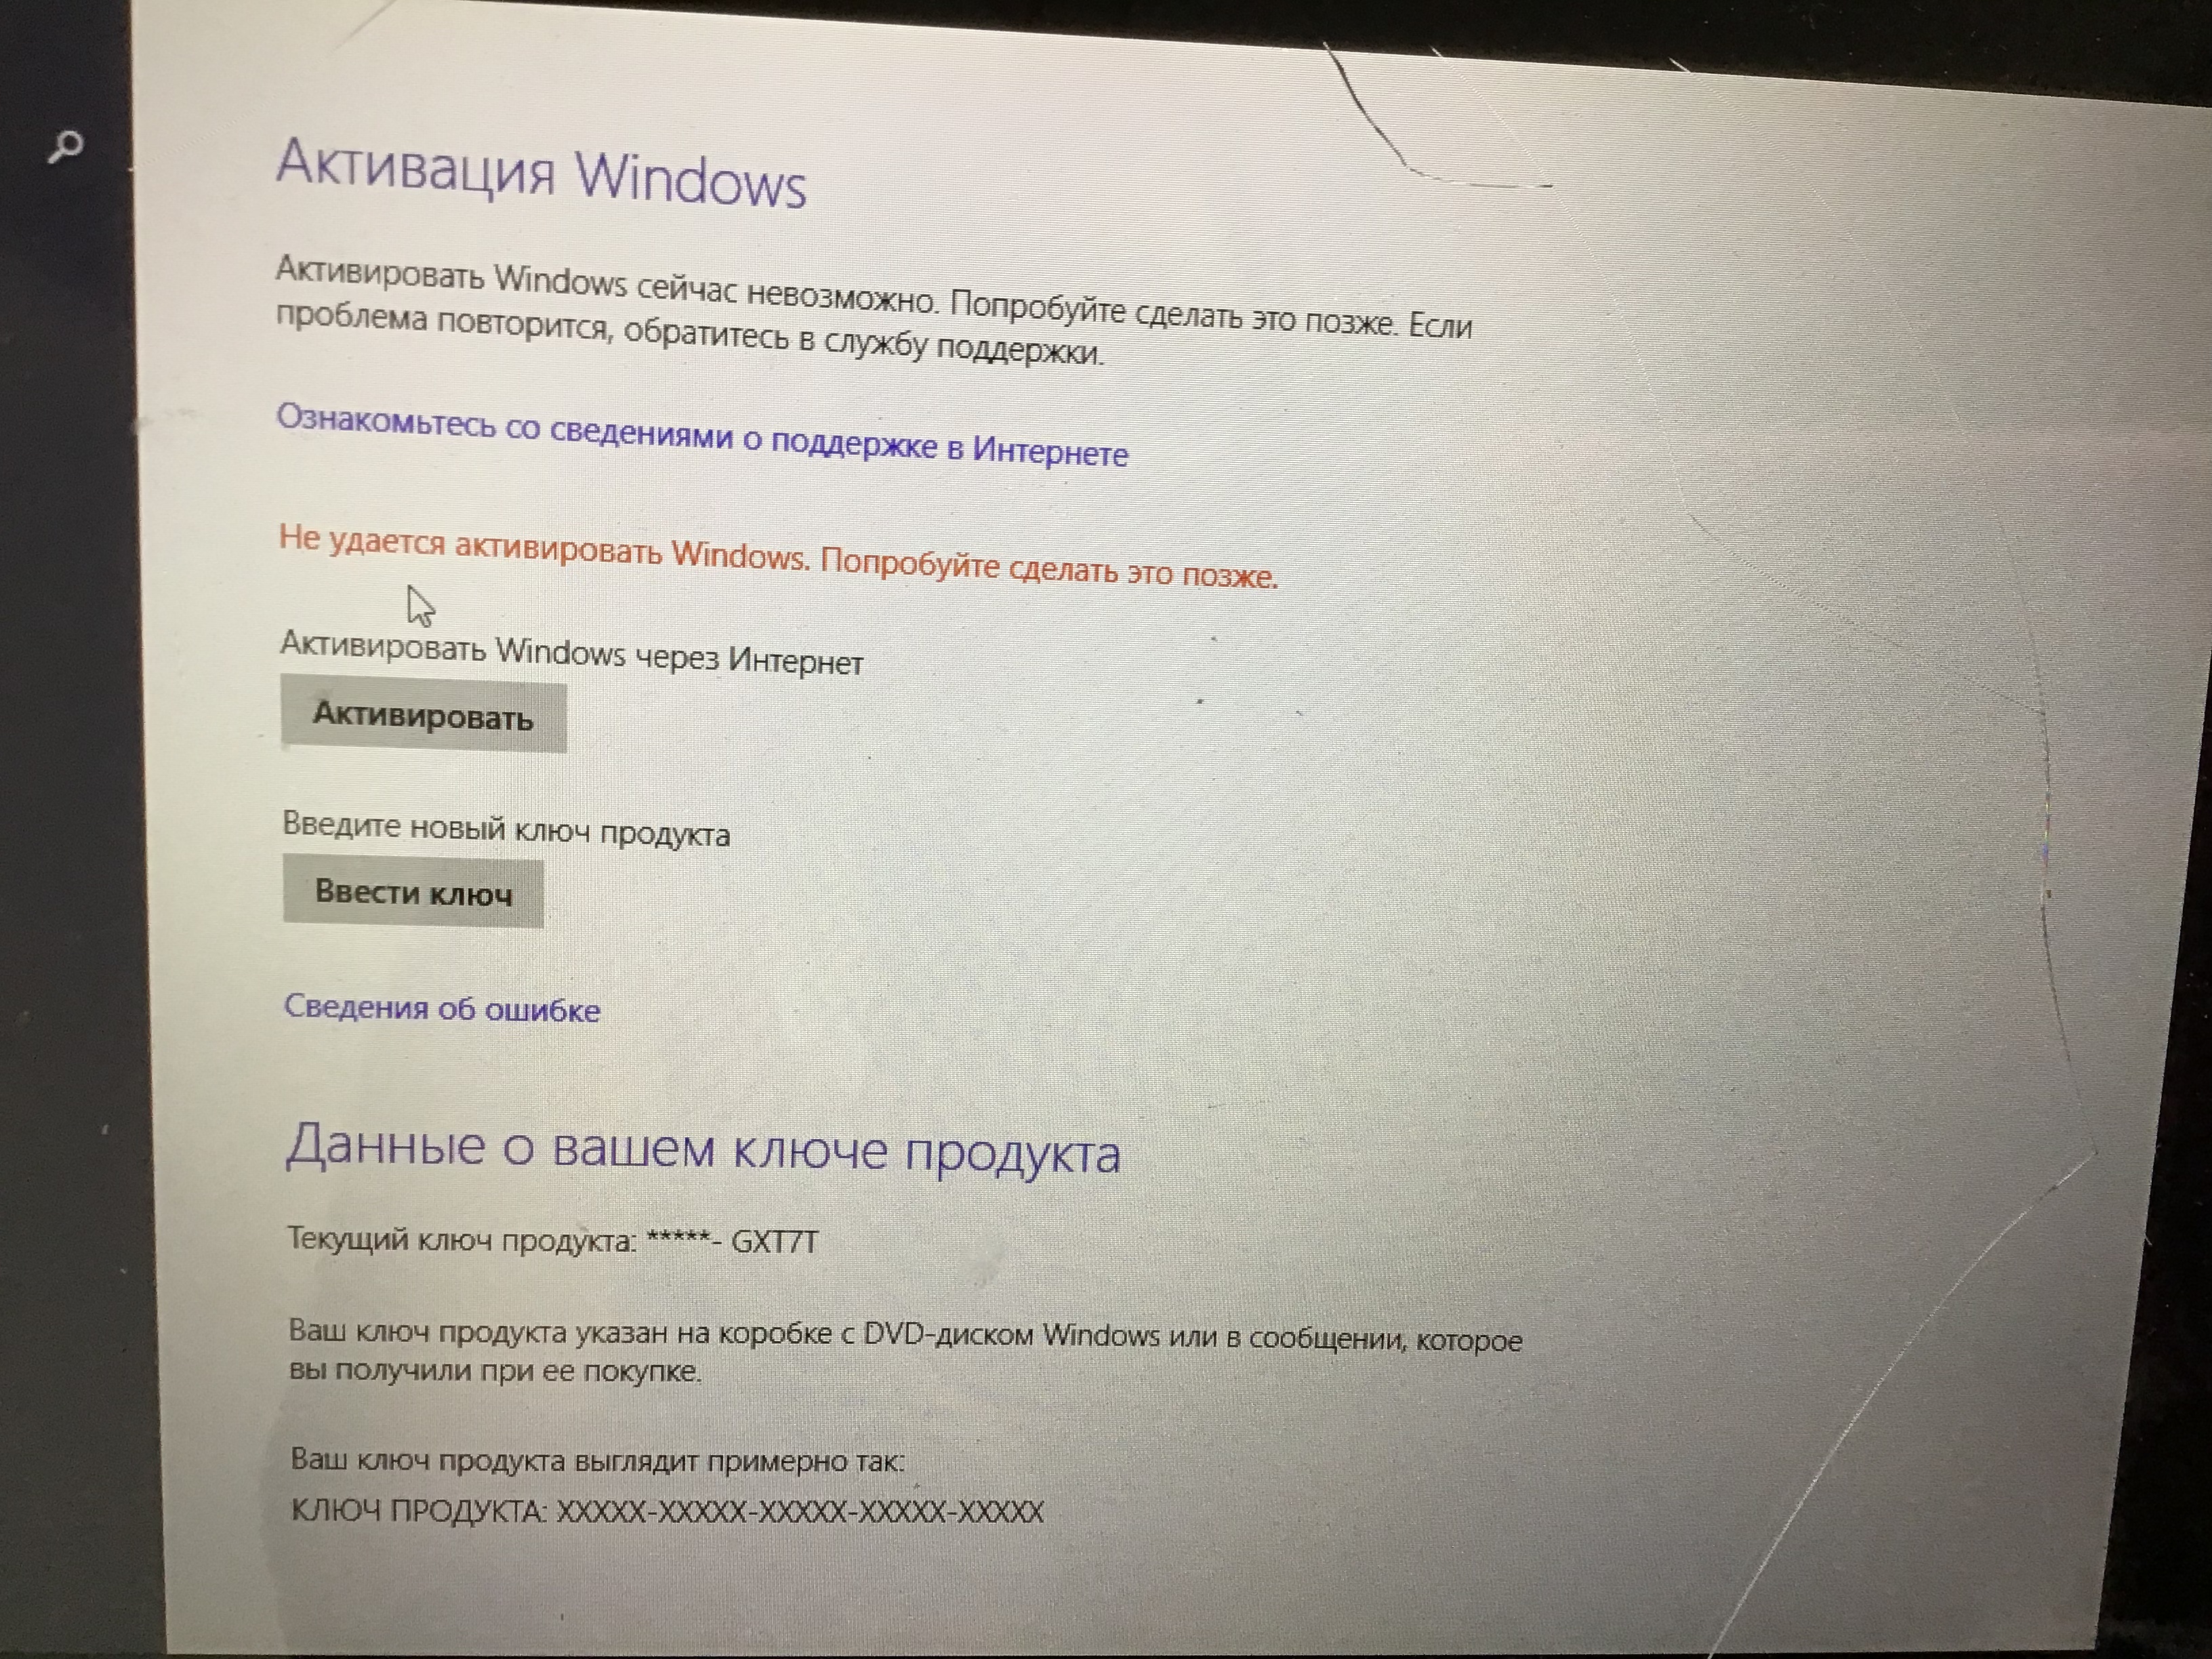 Как выглядит ключ продукта Windows